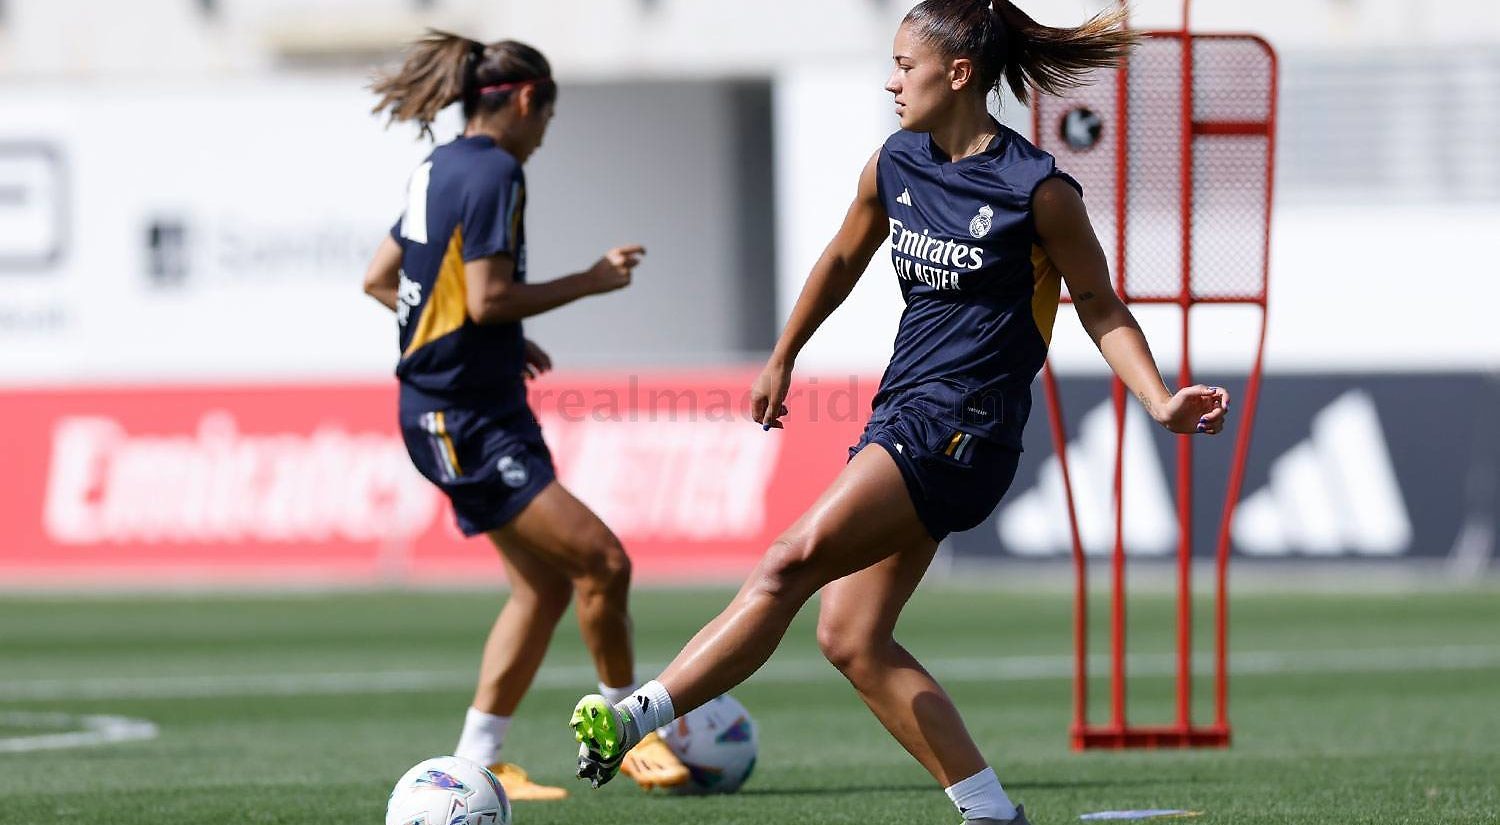 El Real Madrid Femenino se prepara para una nueva temporada